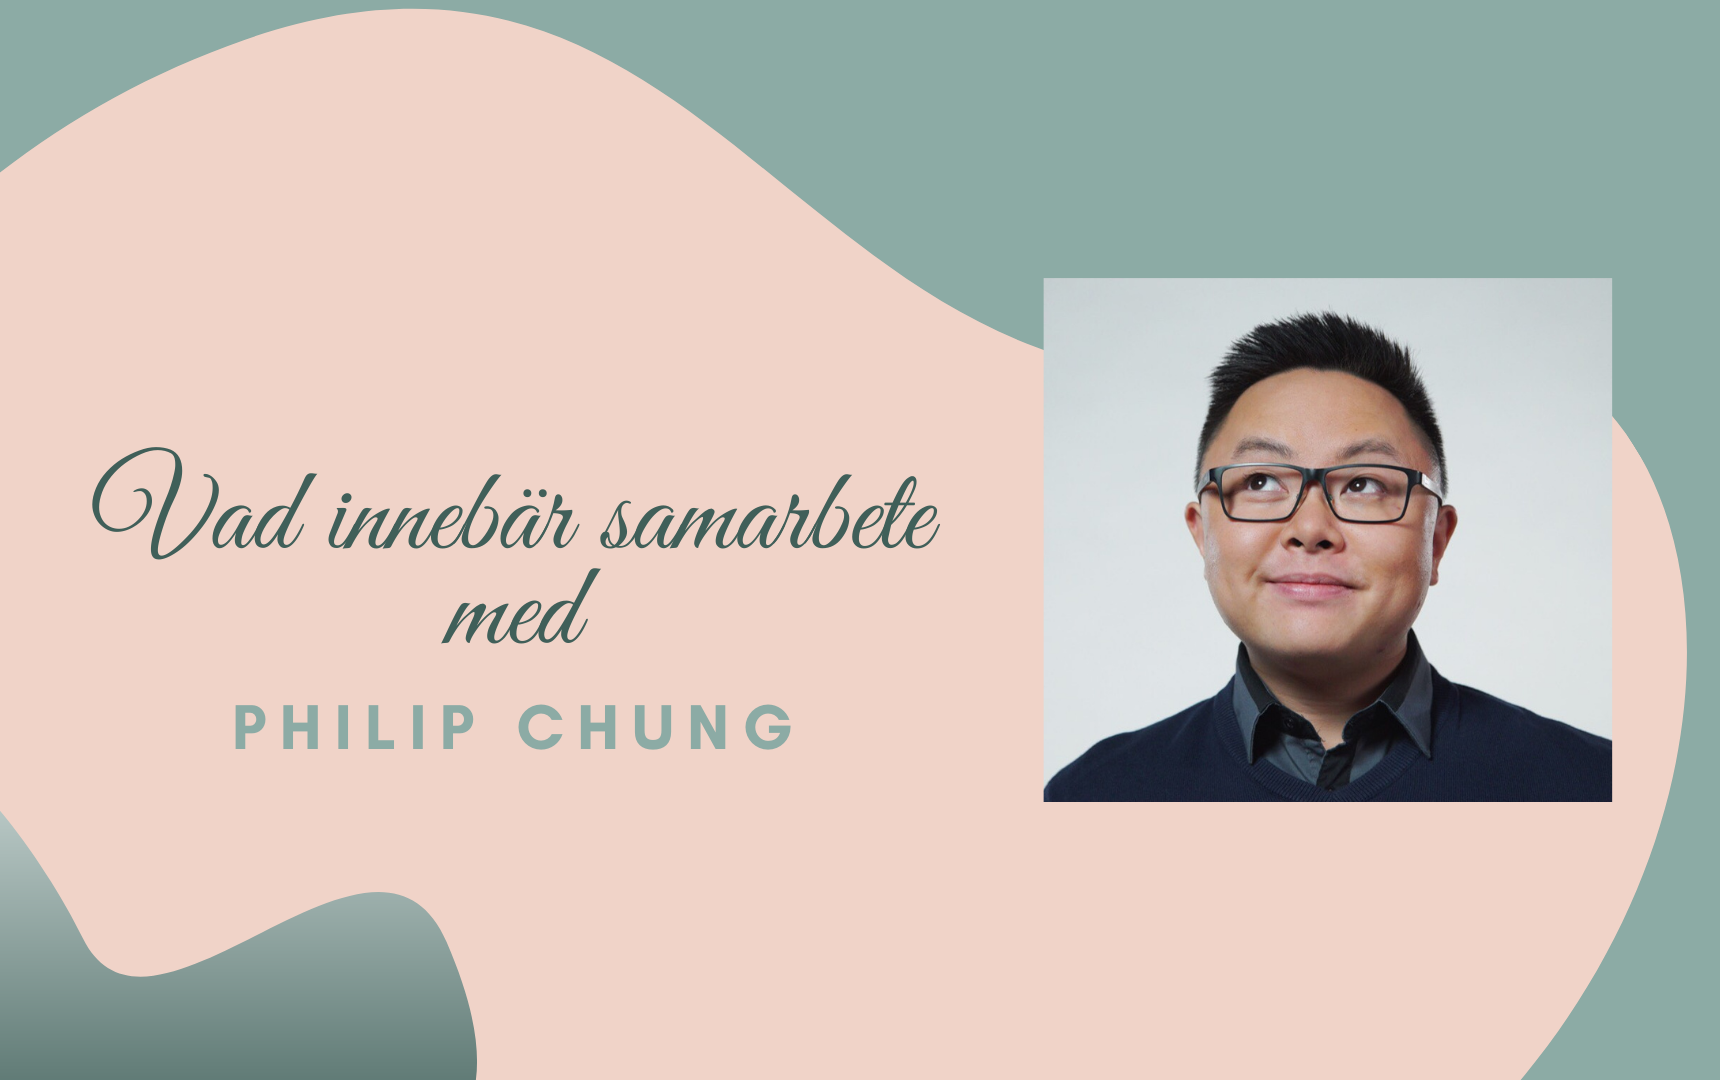 Philip Chung - Samarbete